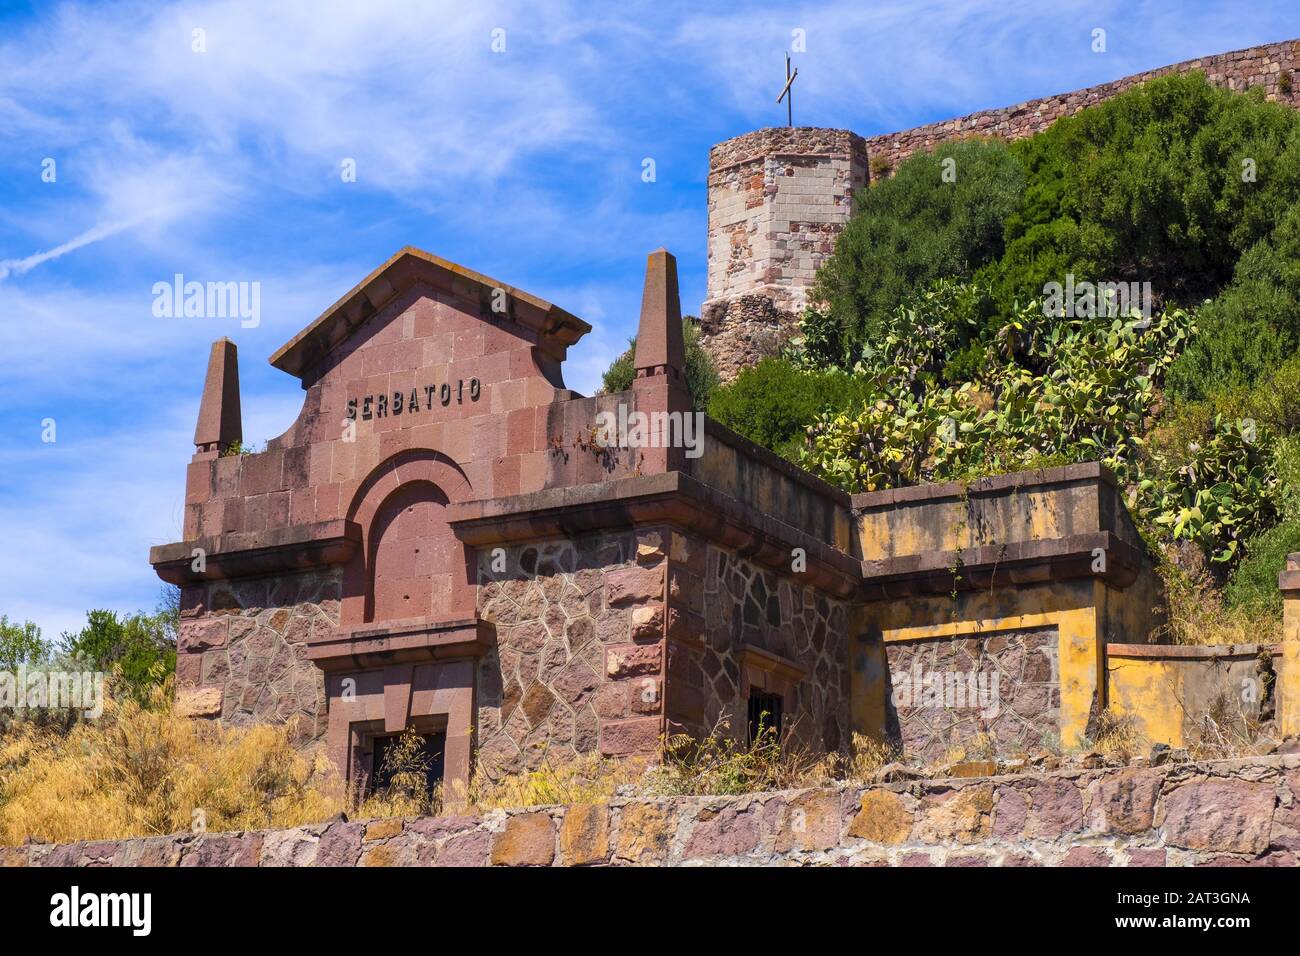 Bosa, Sardinien/Italien - 2018/08/13: Hügel der Burg Malaspina - auch bekannt als Schloss von Serravalle - mit monumentaler Fassade des historischen Wasserreservoirs Serbatoio di Bosa Stockfoto